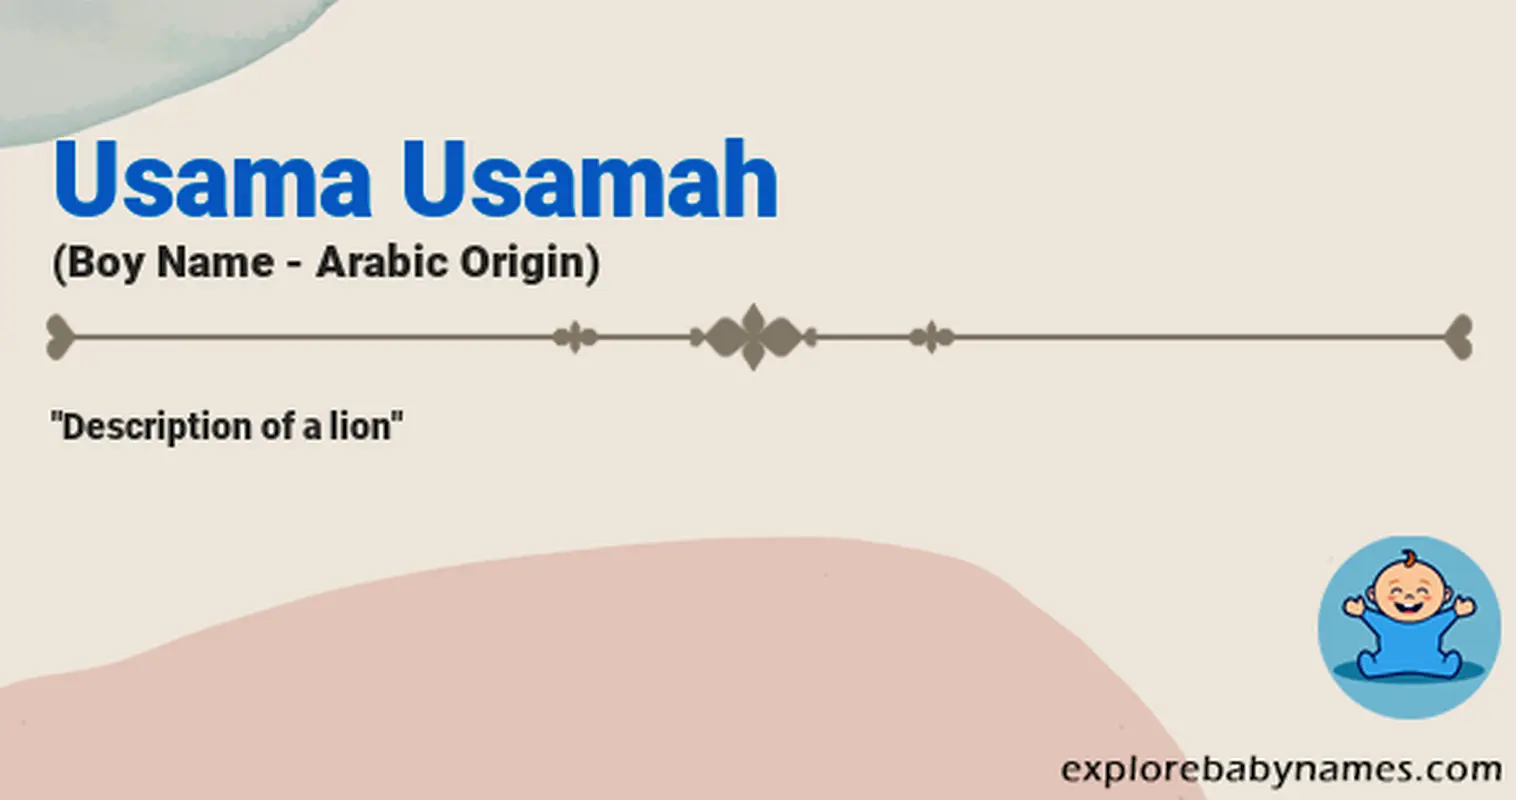 Meaning of Usama Usamah